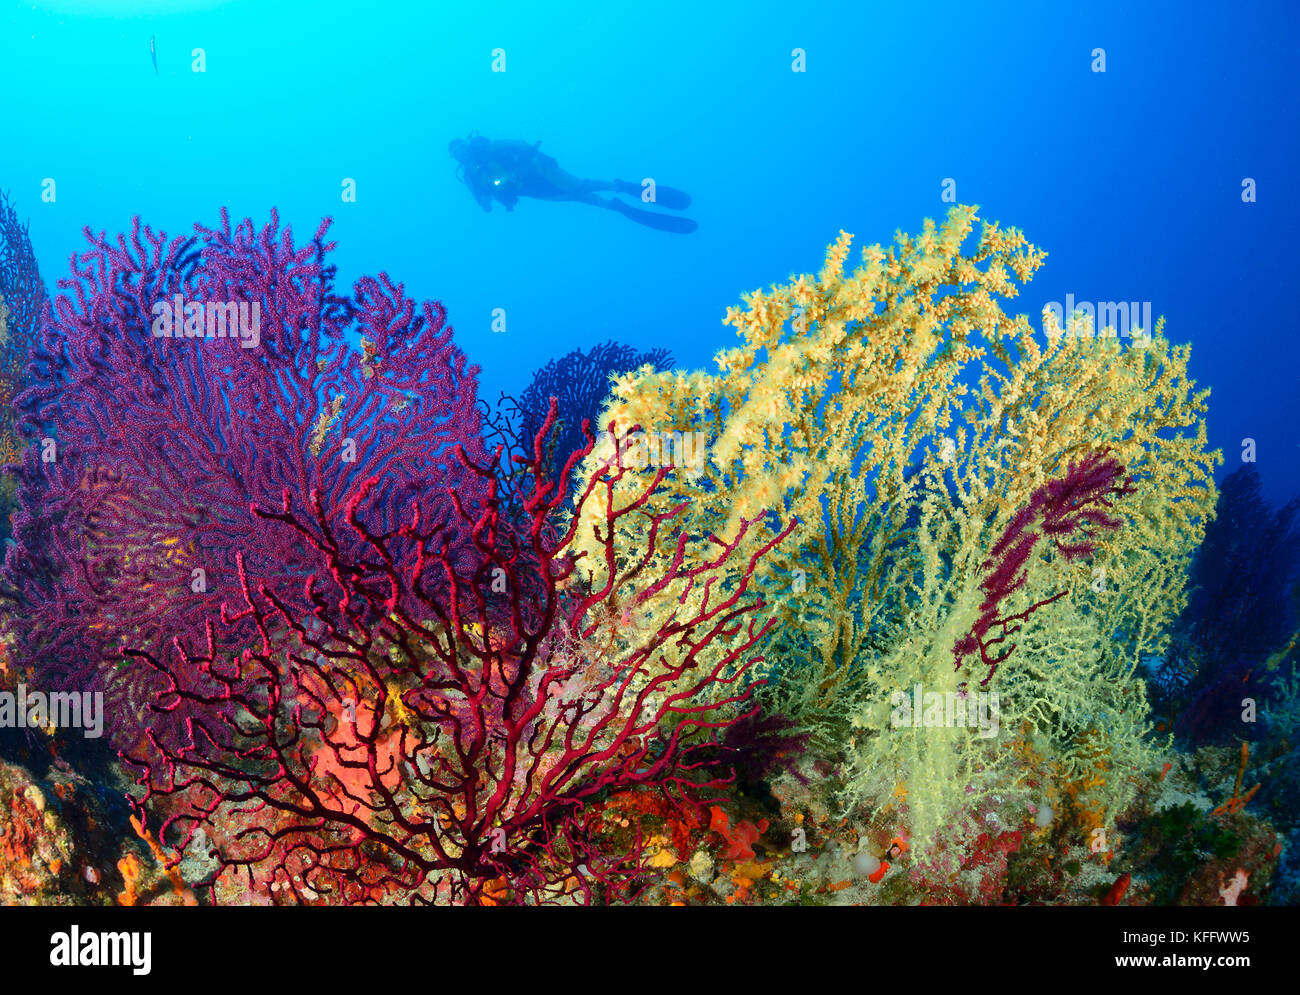 Gold Korallen und Violescent meer Peitsche, Savalia savaglia und Paramuricea Clavata und Scuba Diver, Adria, Mittelmeer, Kornaten, Dalmat Stockfoto